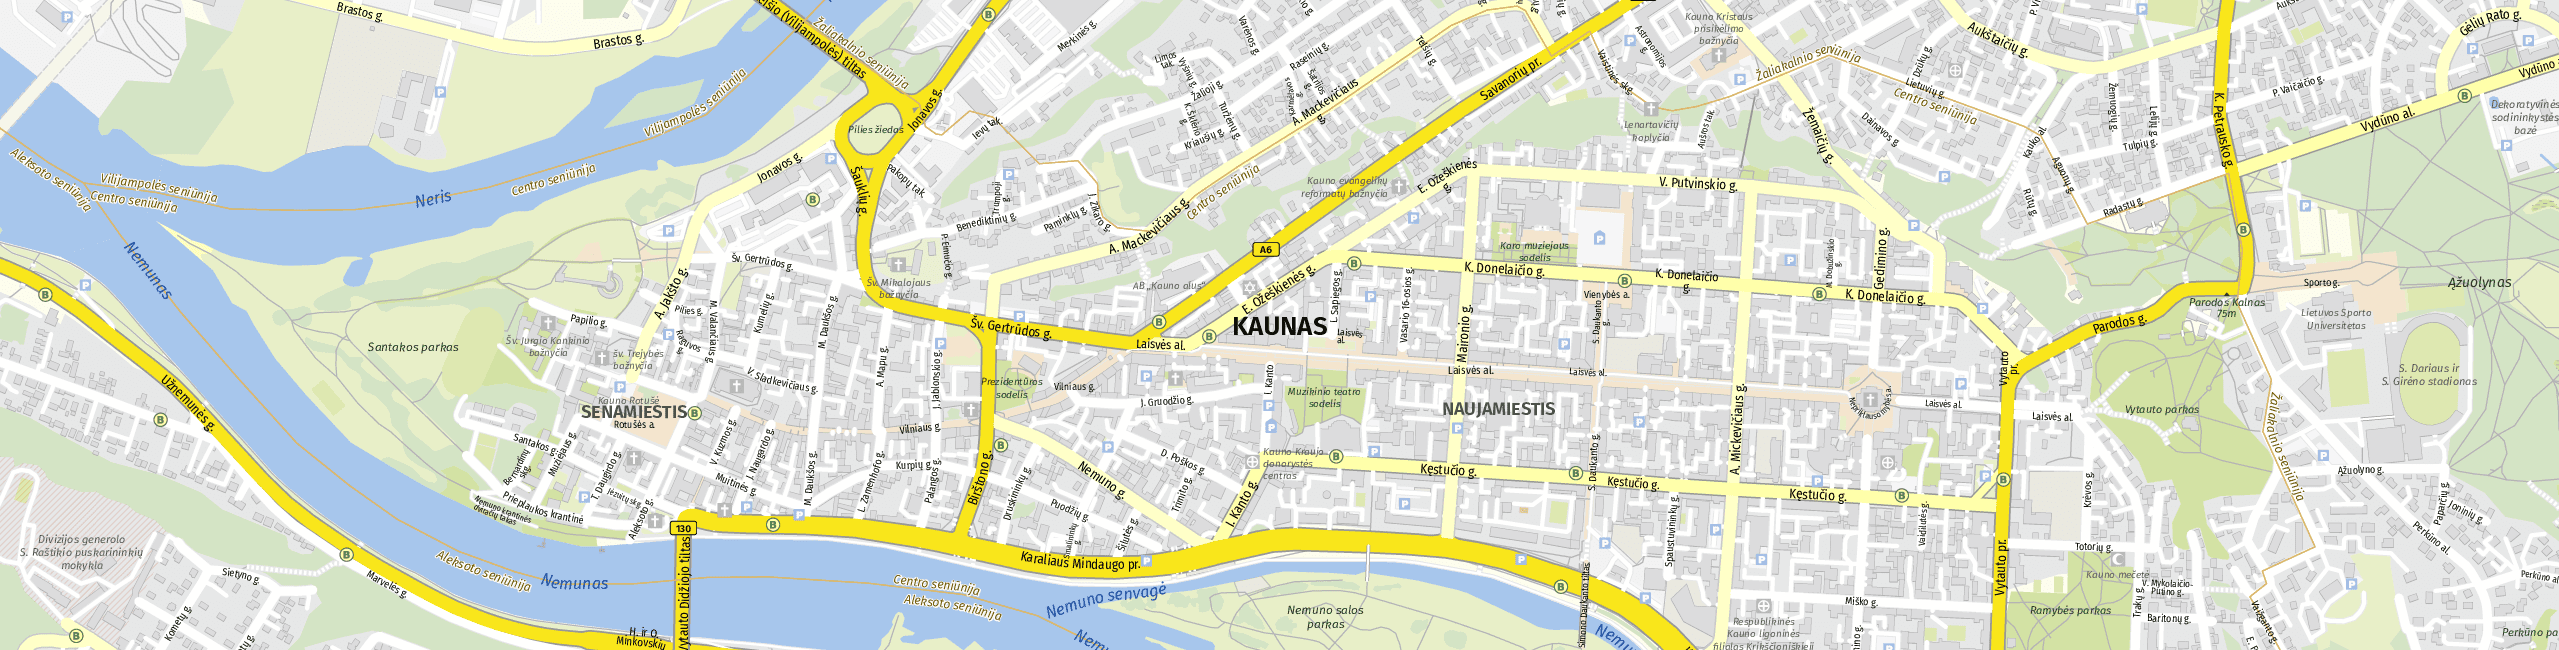 Stadtplan Kauen zum Downloaden.